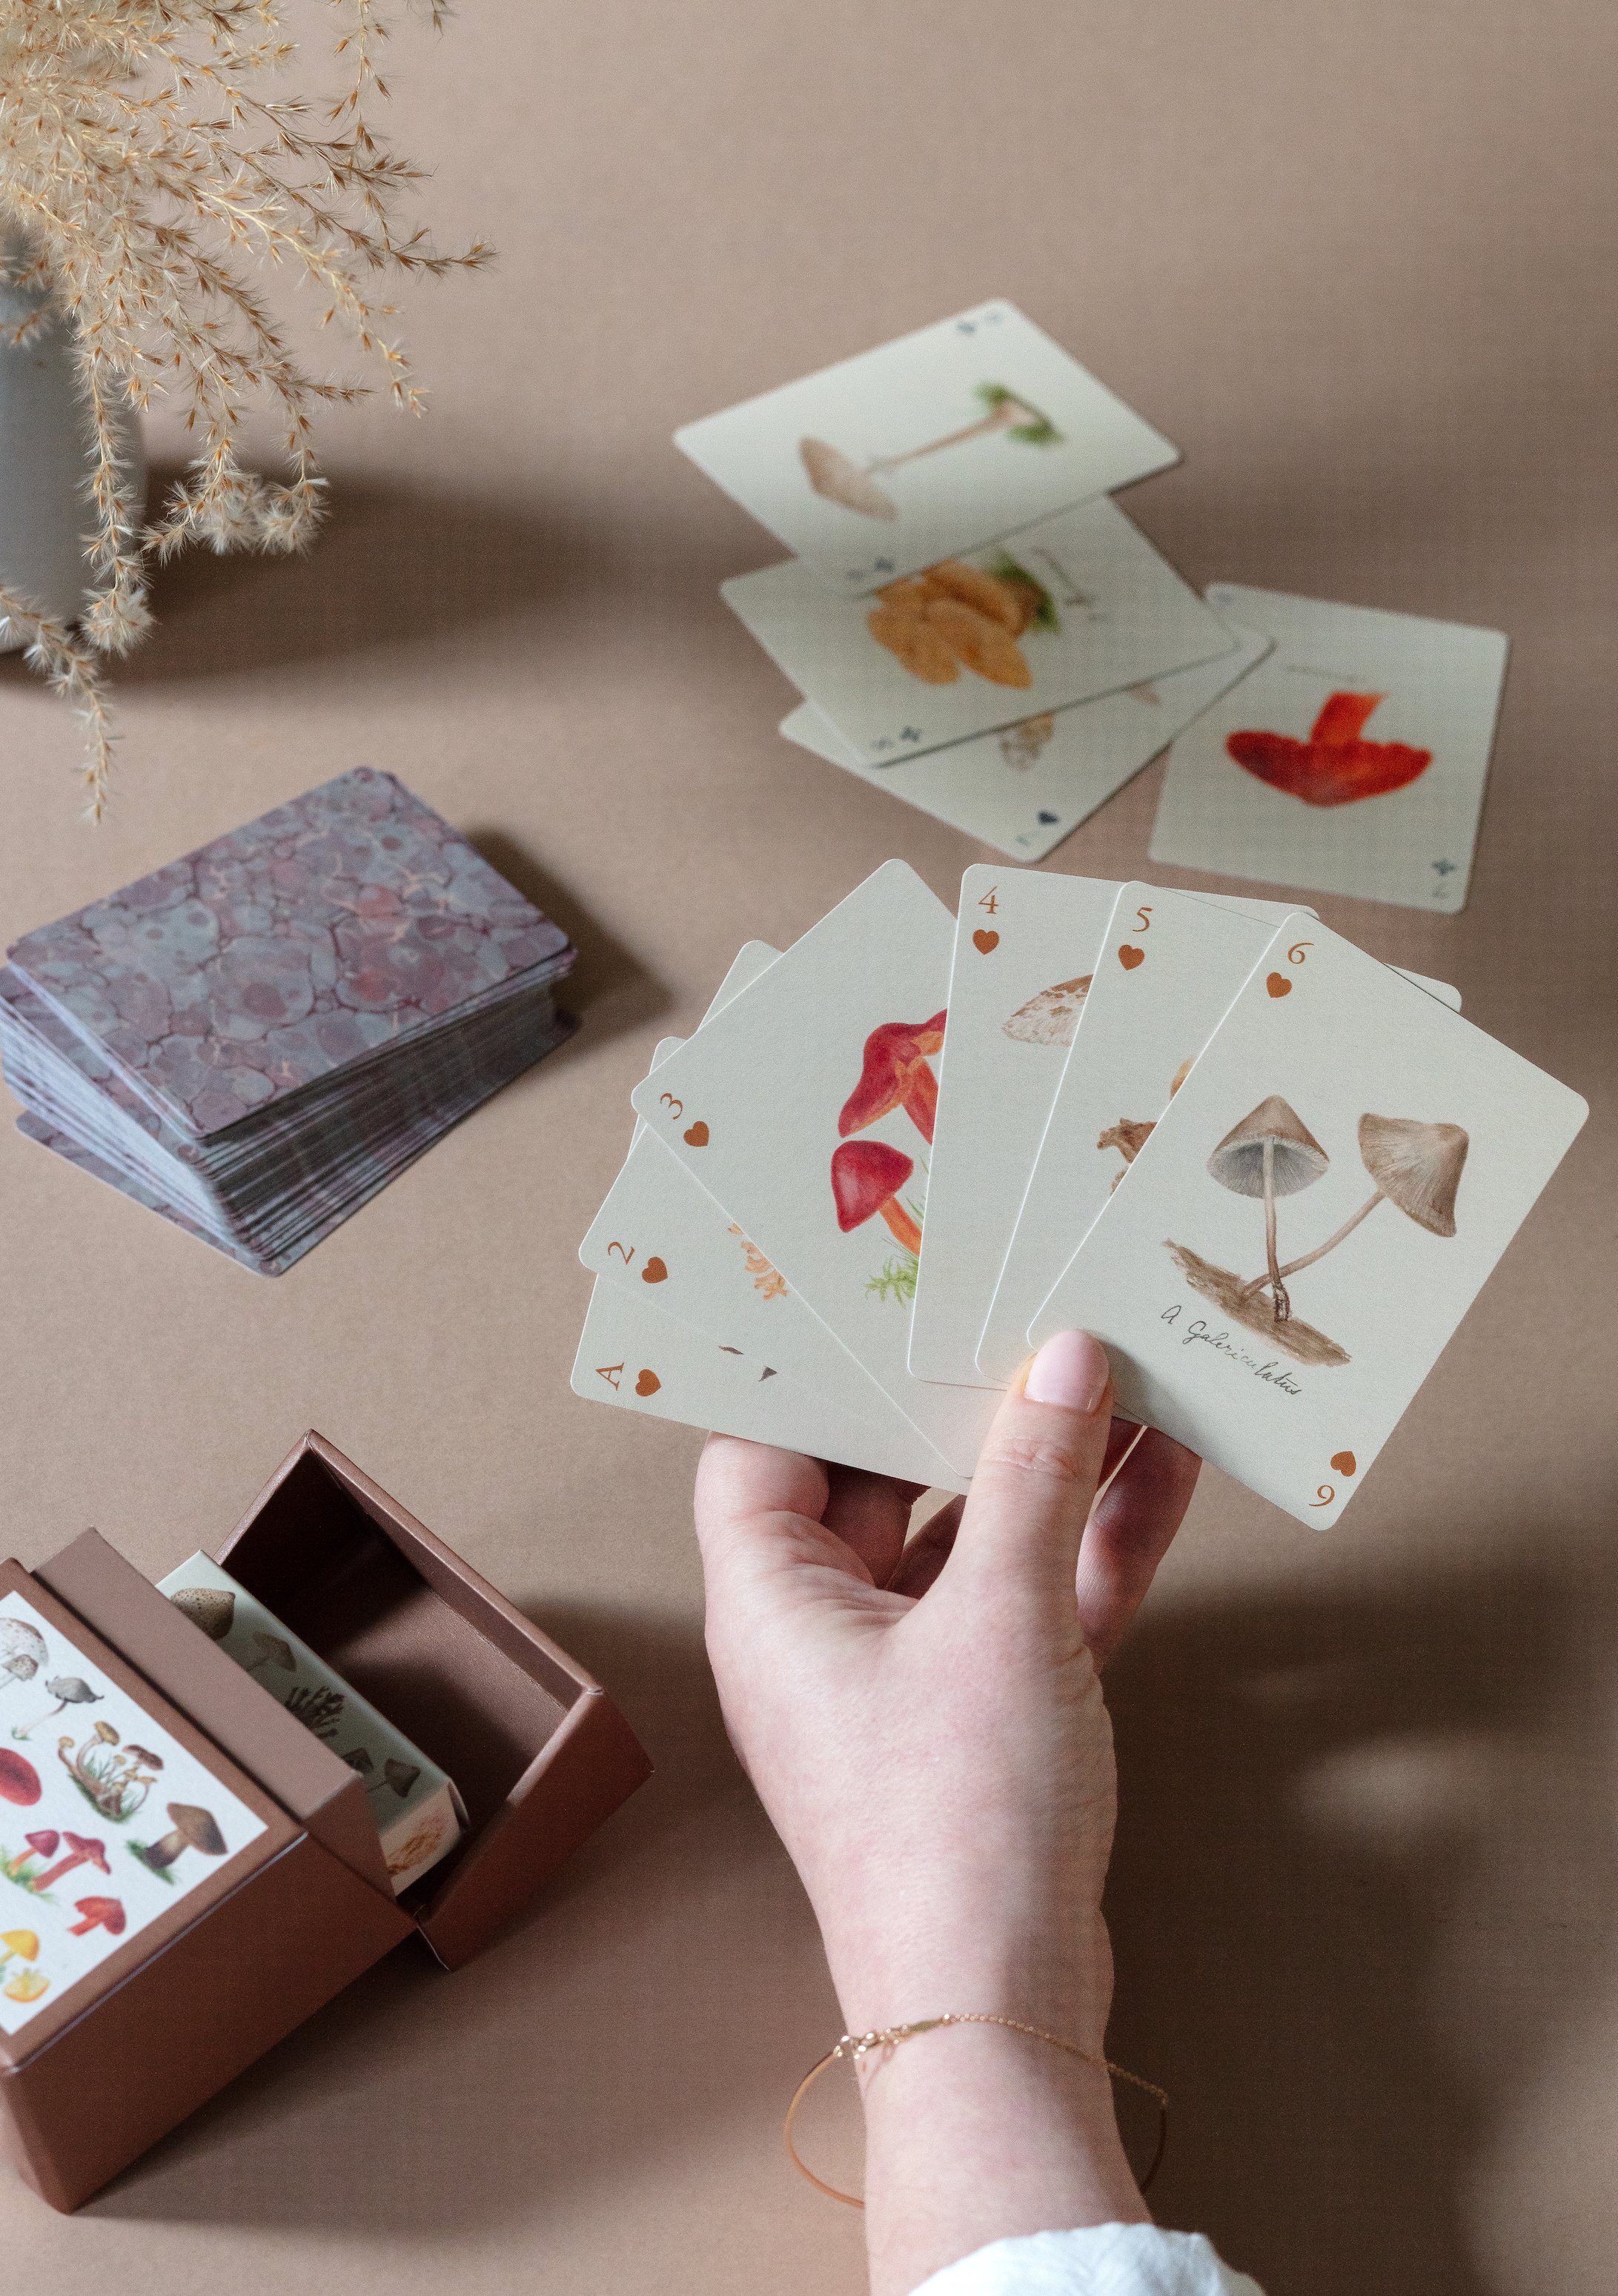 Playing Cards Set of Two Decks Fungi.jpg